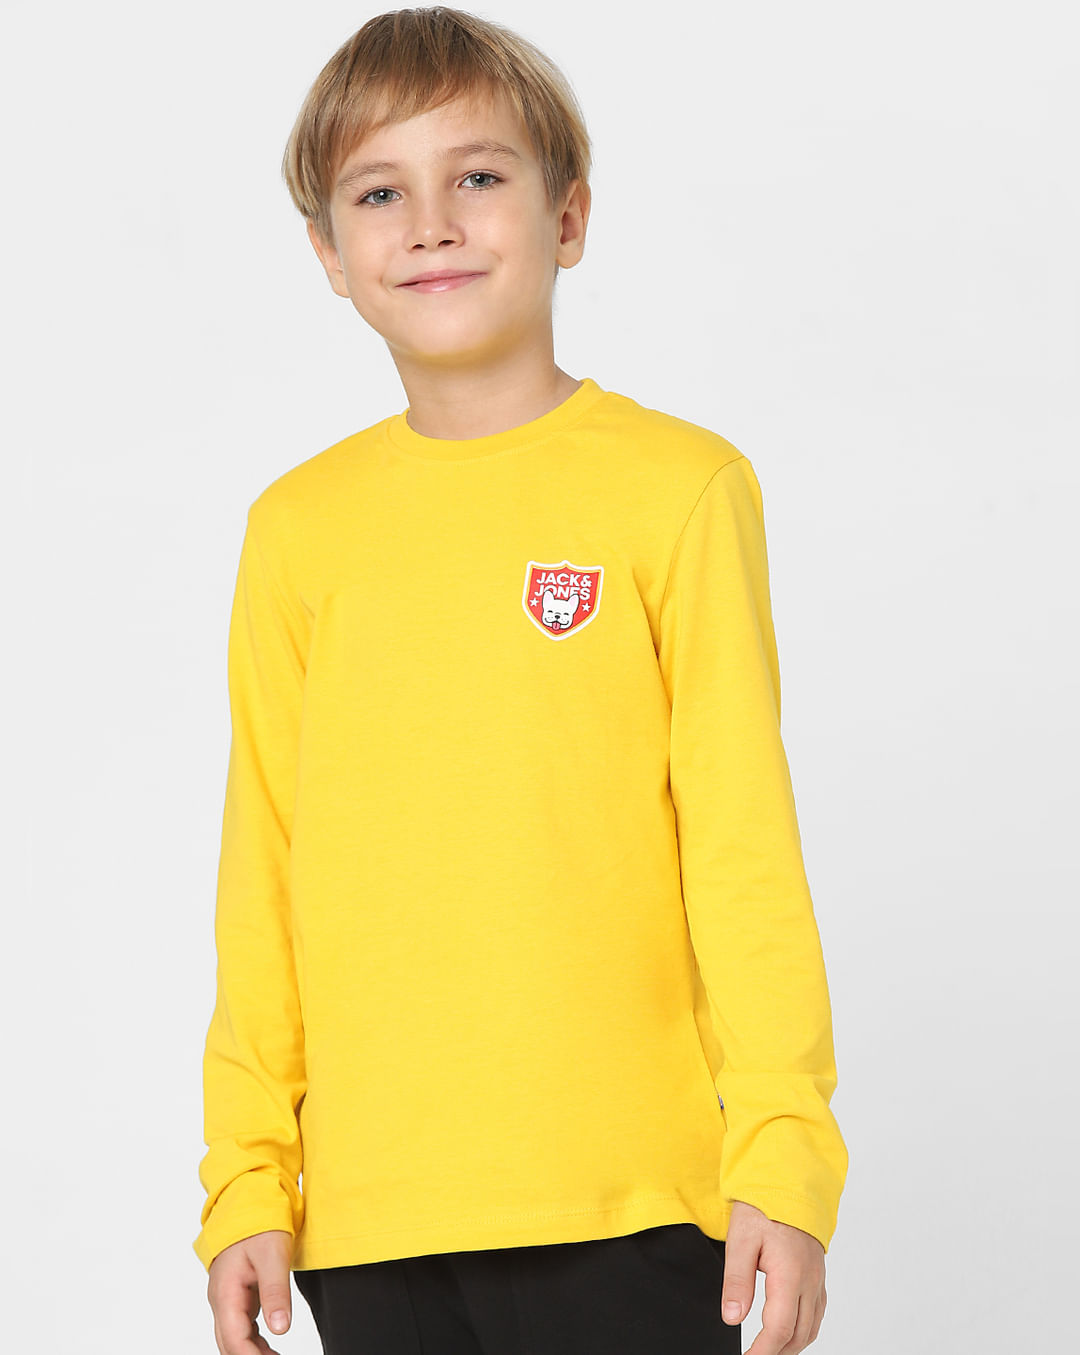 Buy Yellow Crew Neck T-shirt for Boys Online at Jack&Jones Junior ...